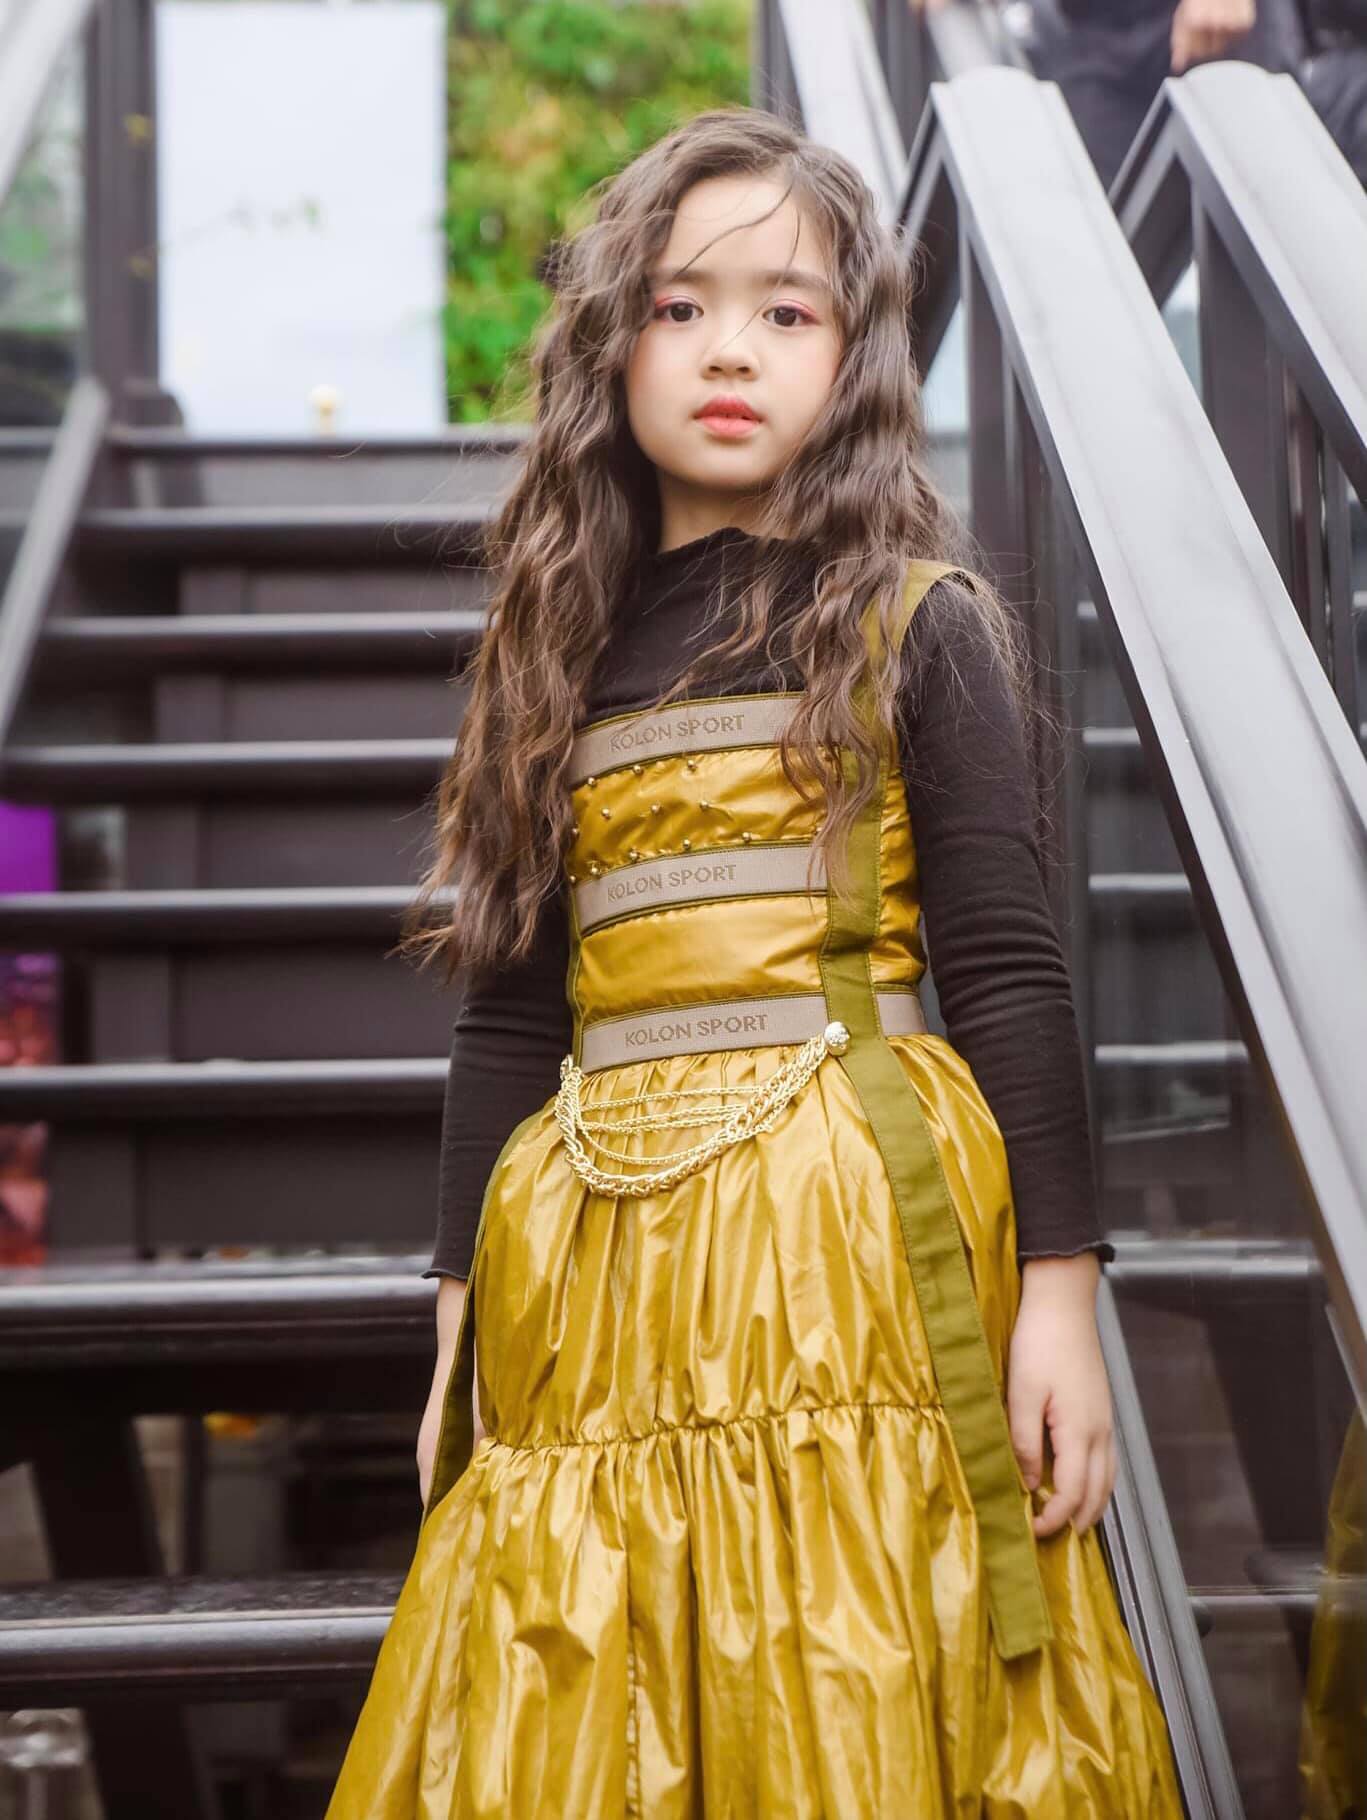 Mẫu nhí 8 tuổi gây sốt với thần thái và gu thời trang sành điệu như sao Hàn, xem qua profile càng bất ngờ - ảnh 7